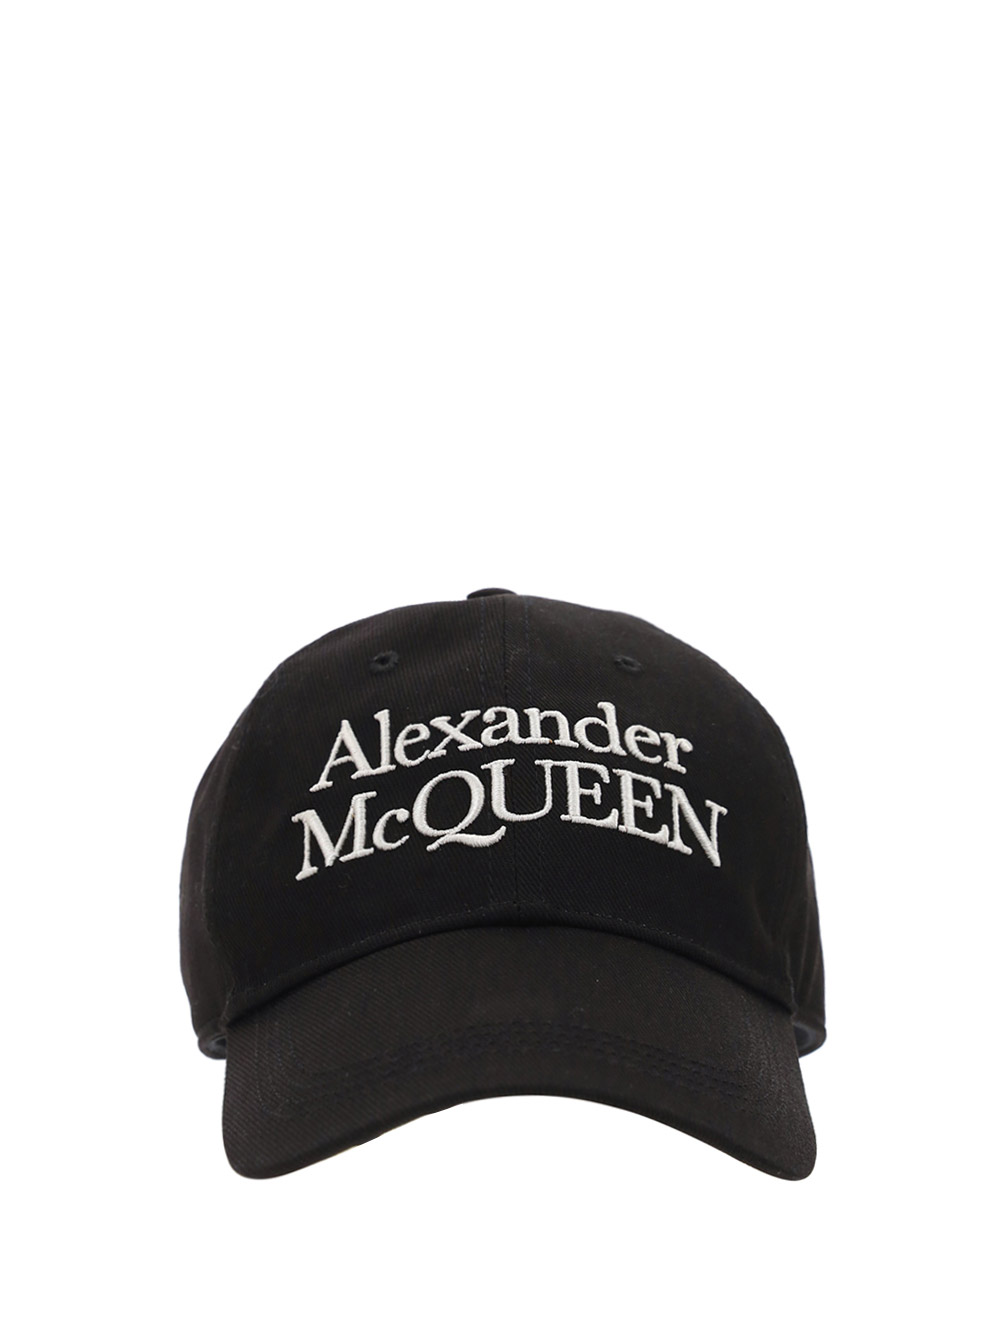 ALEXANDER MCQUEEN MCQUEEN STACKED HAT,6886584105Q_1078